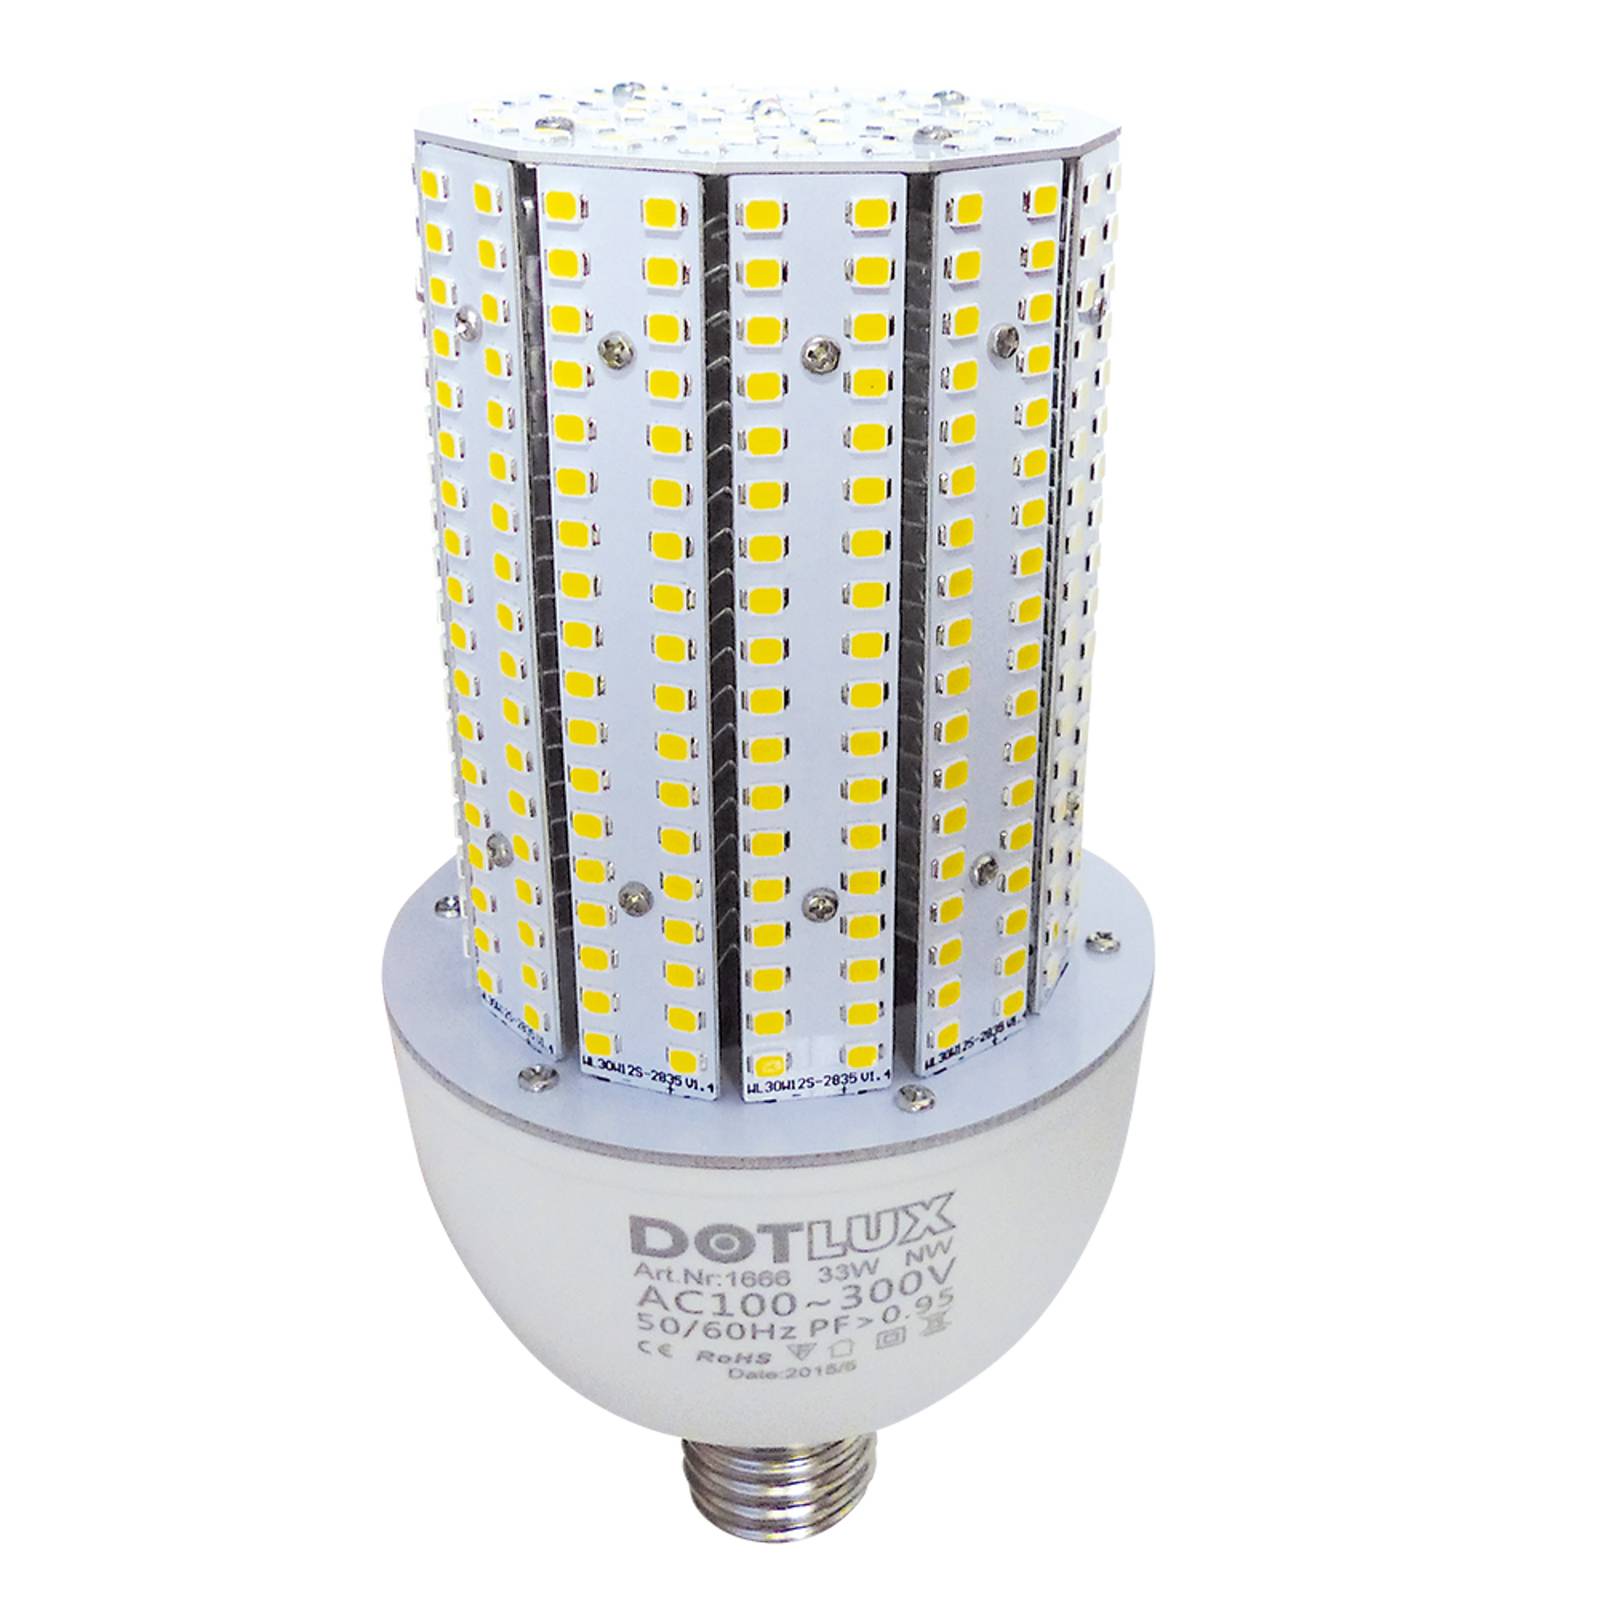 DOTLUX RETROFITprotect LED-Lampe E27 28W 3.000K